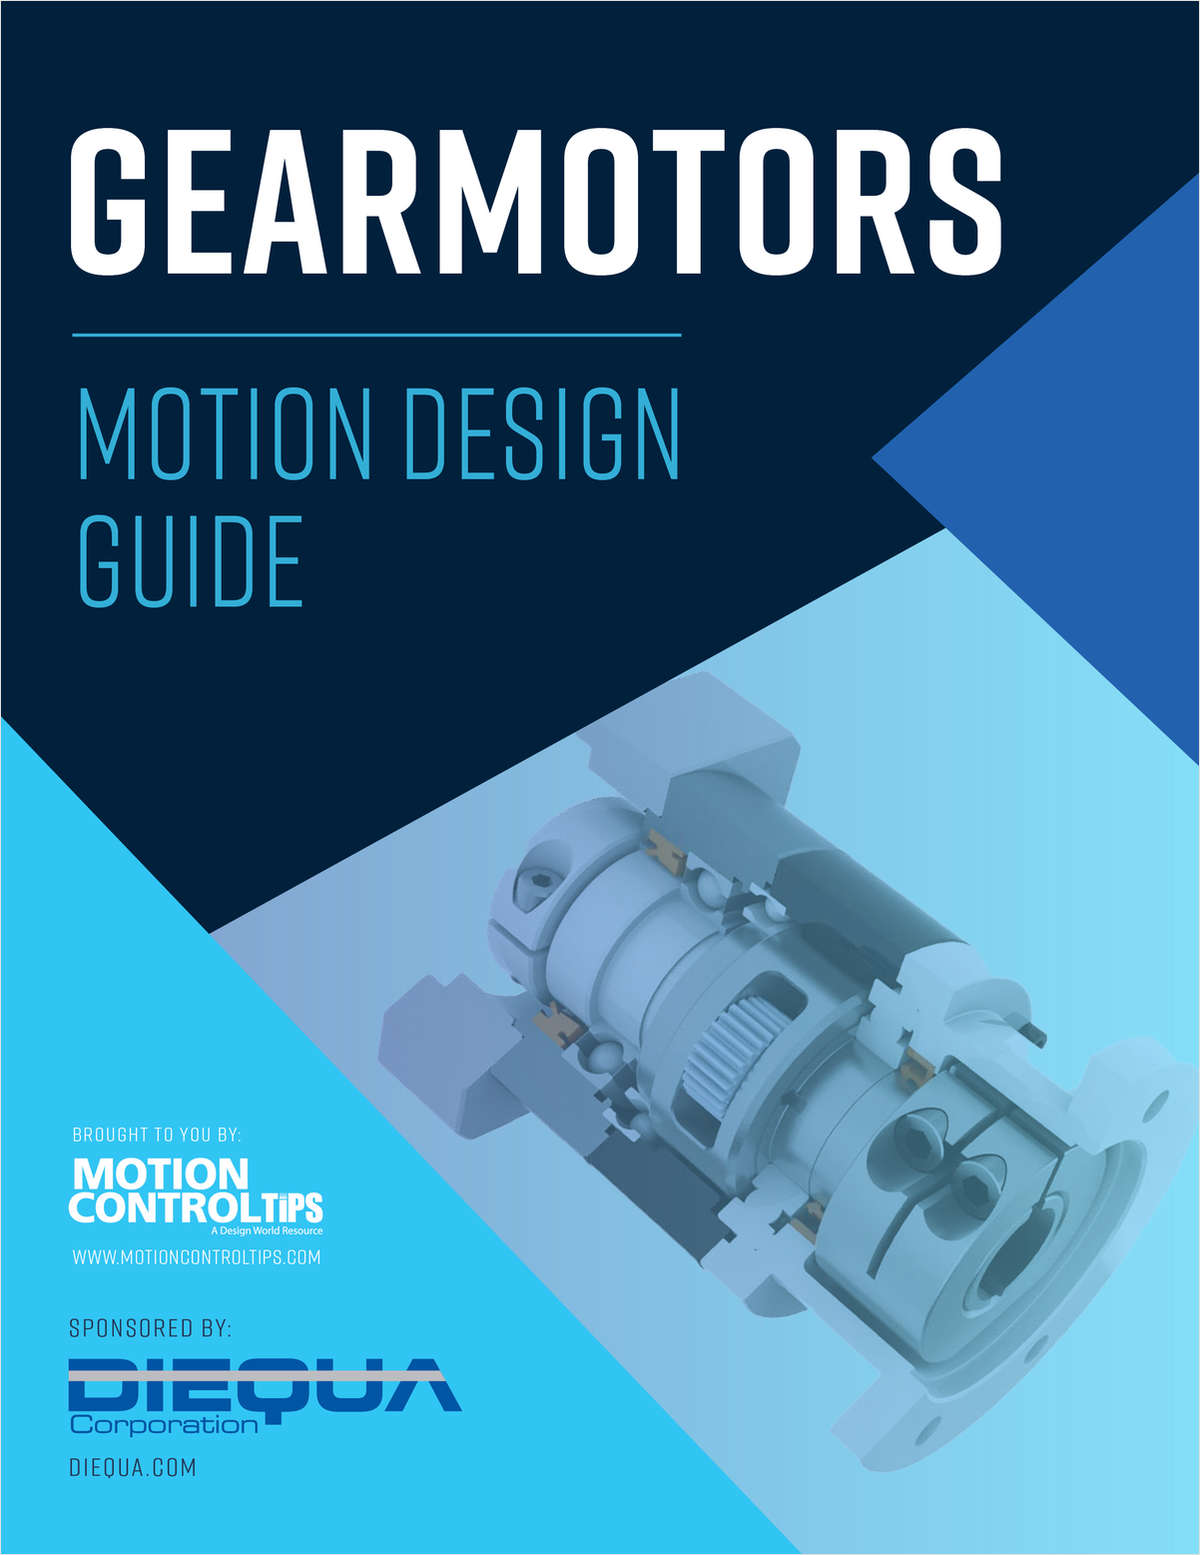 Gearmotors Design Guide